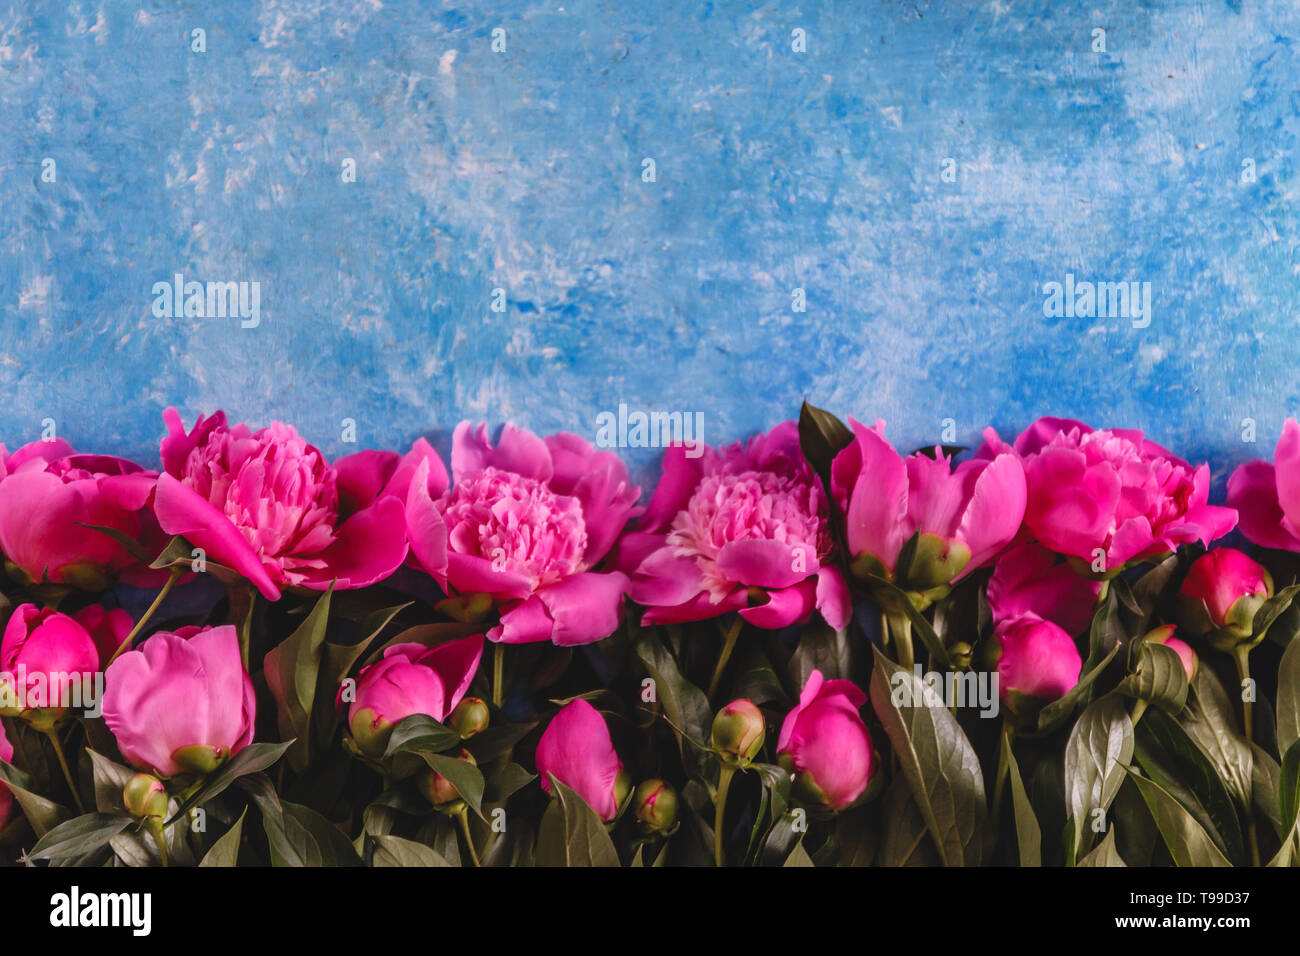 Bouquet de pivoines rose-mauve dans un vase sur un fond bleu en-béton. Vue de dessus. Mise à plat. Banque D'Images